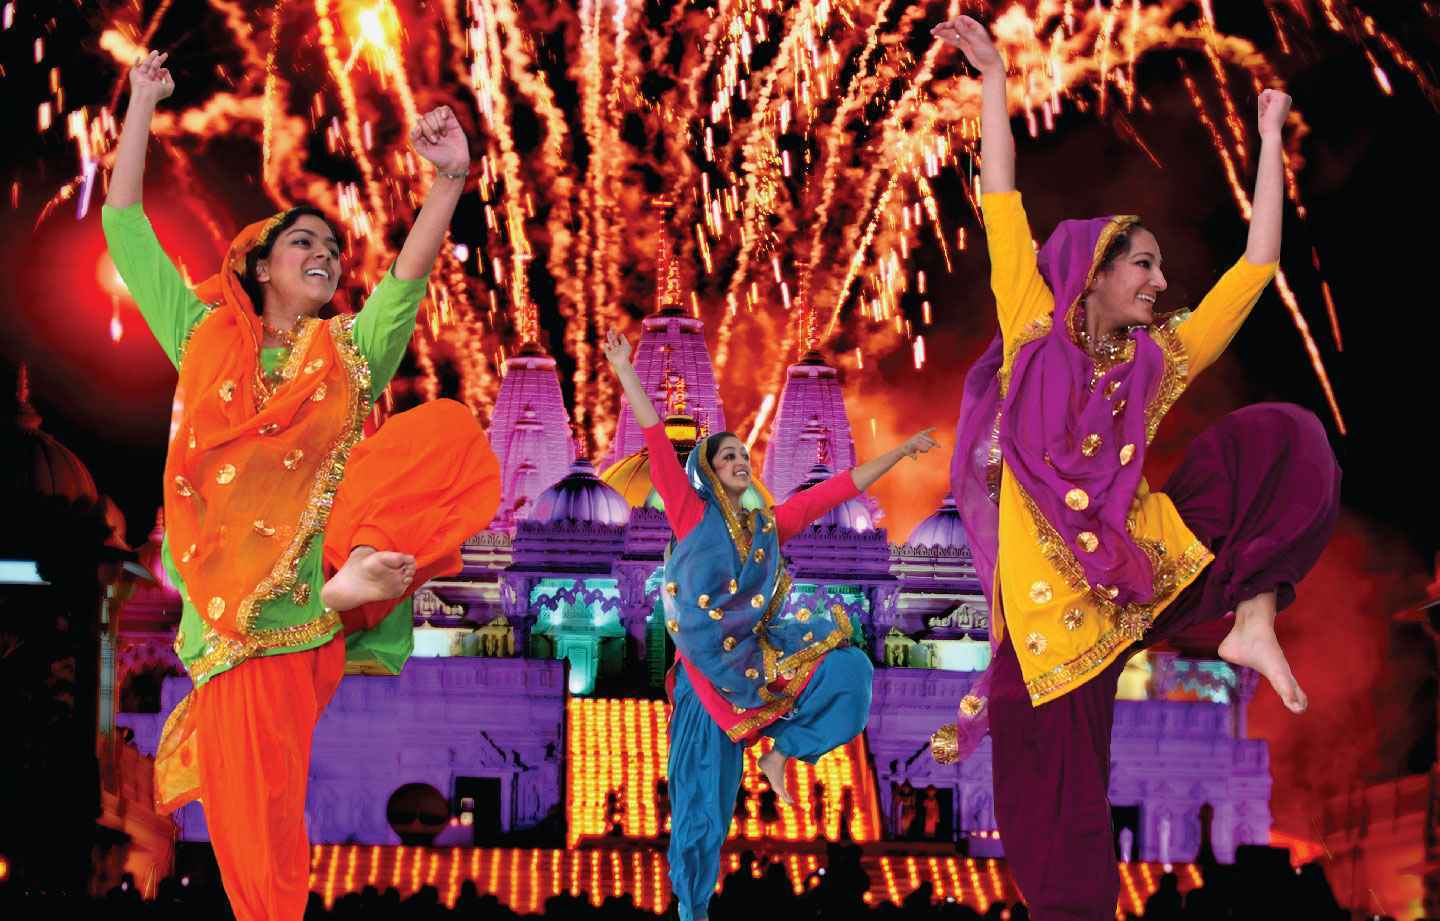 Essay festivals of india in hindi